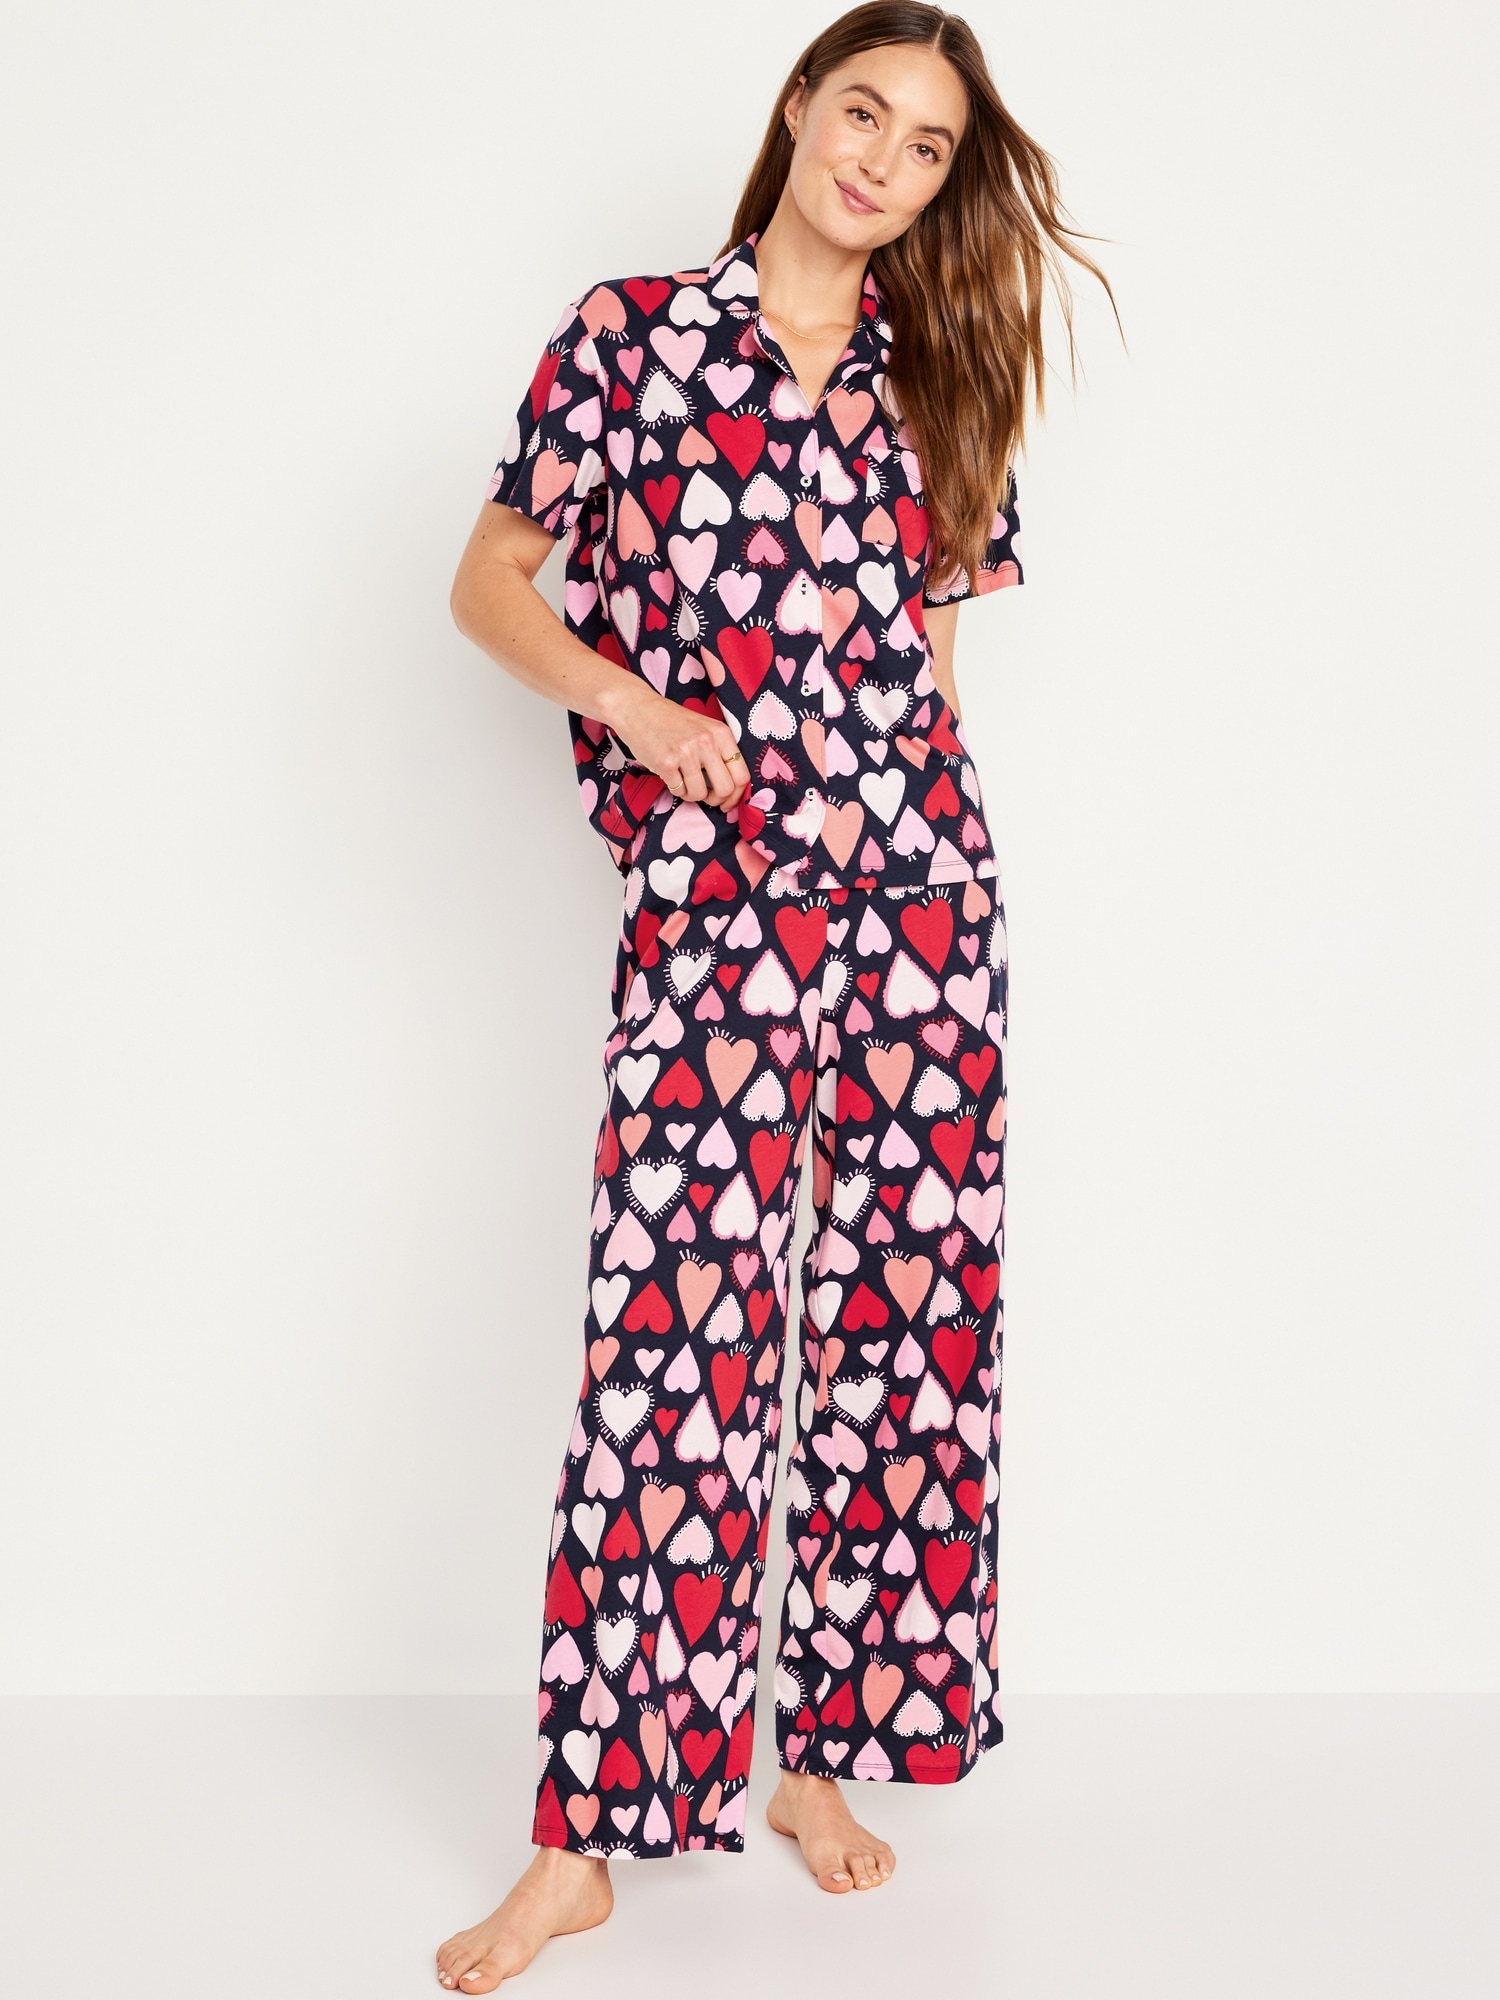 Matching Valentine Print Pajamas